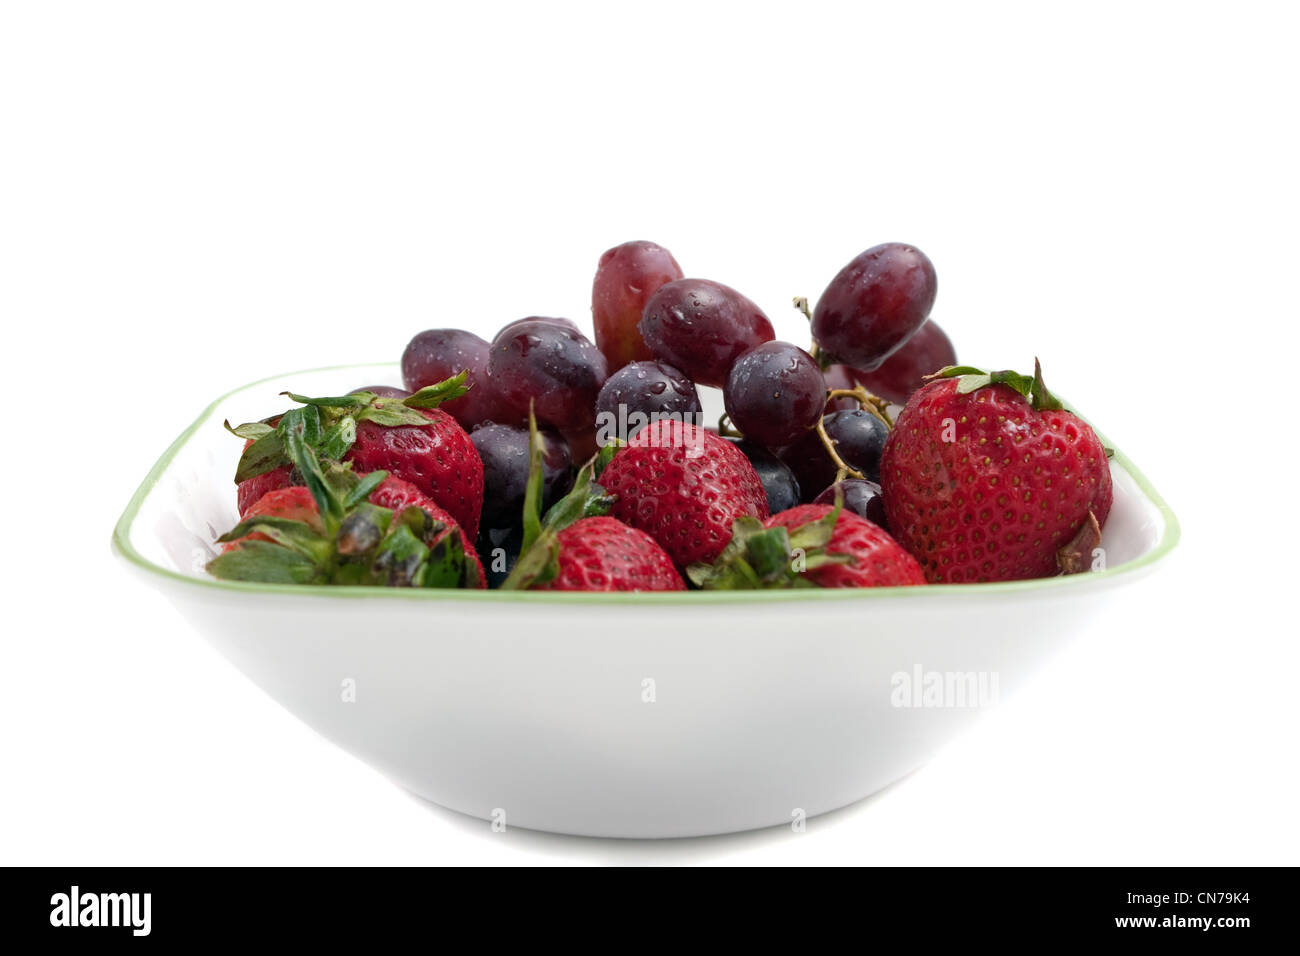 Eine Schale mit roten Antioxidans reiche Beeren darunter rote kernlose Trauben und frischen Reifen Erdbeeren. Stockfoto